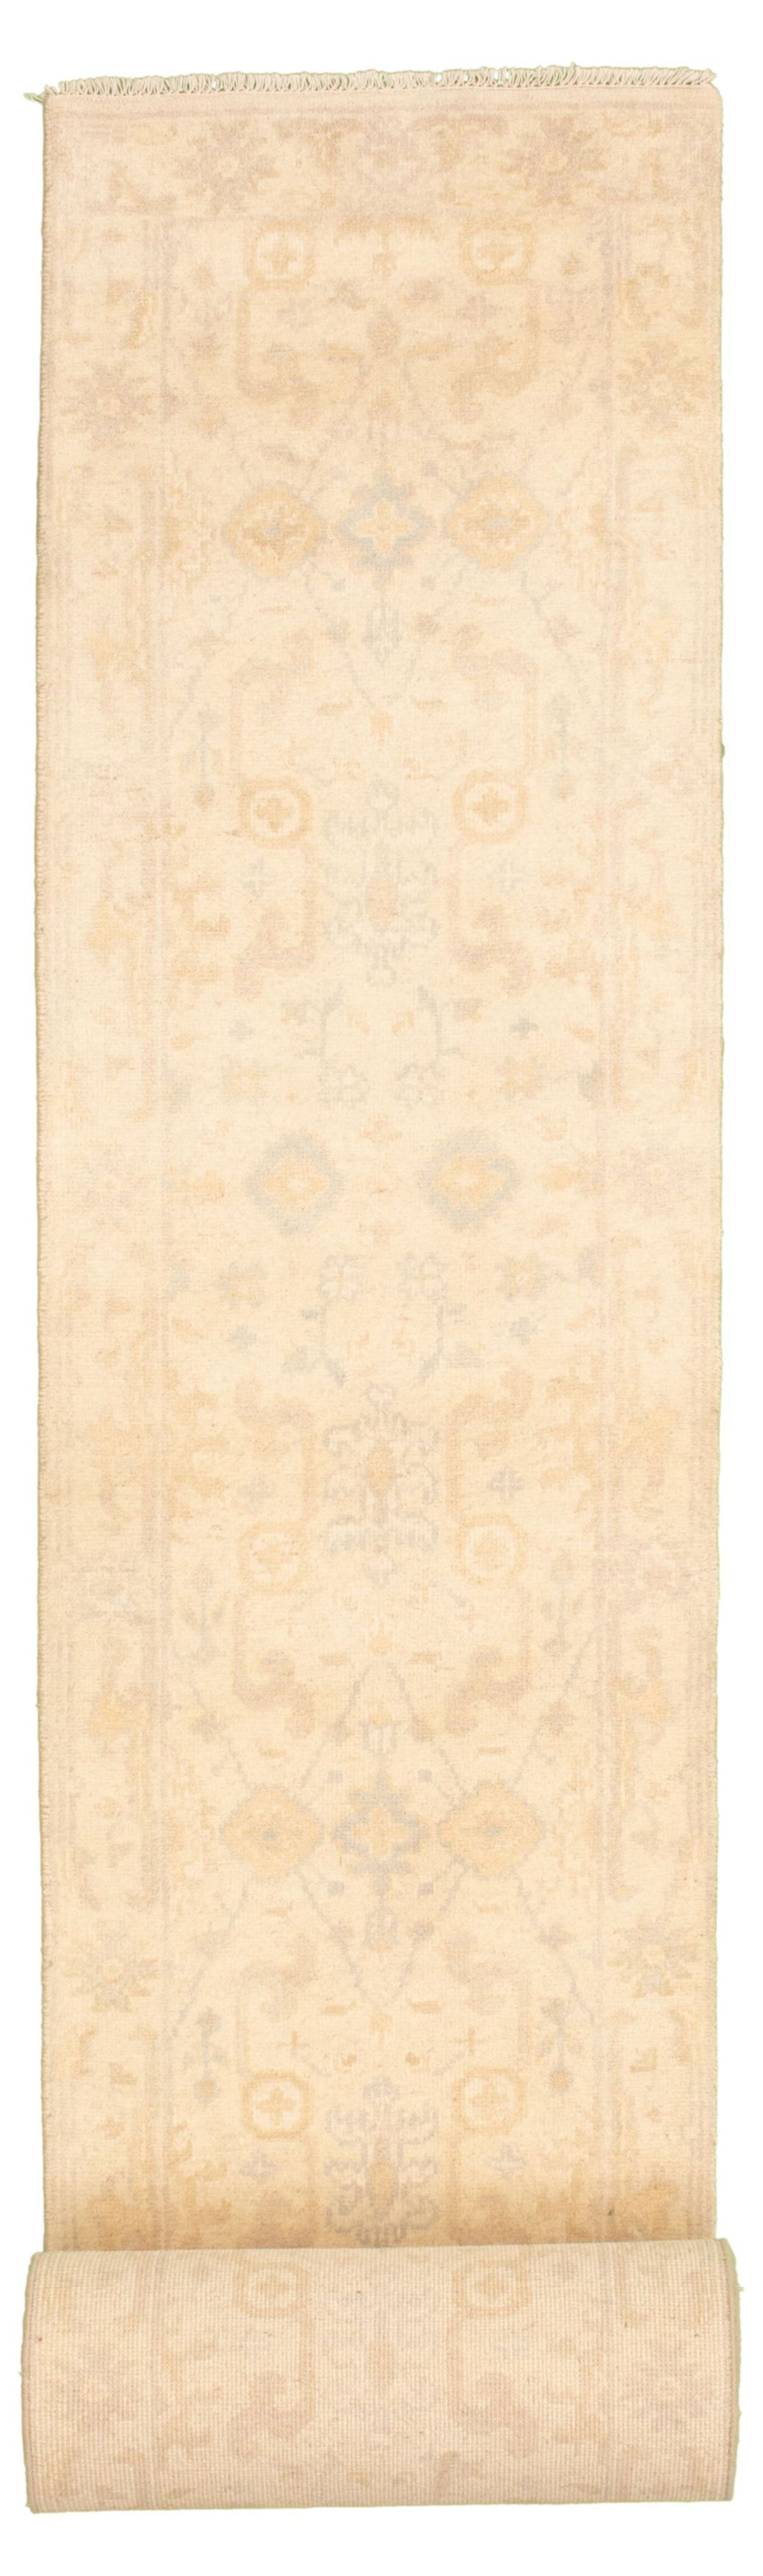 Hand-knotted Royal Ushak Light Khaki Wool Rug 2'6" x 25'8" Size: 2'6" x 25'8"  